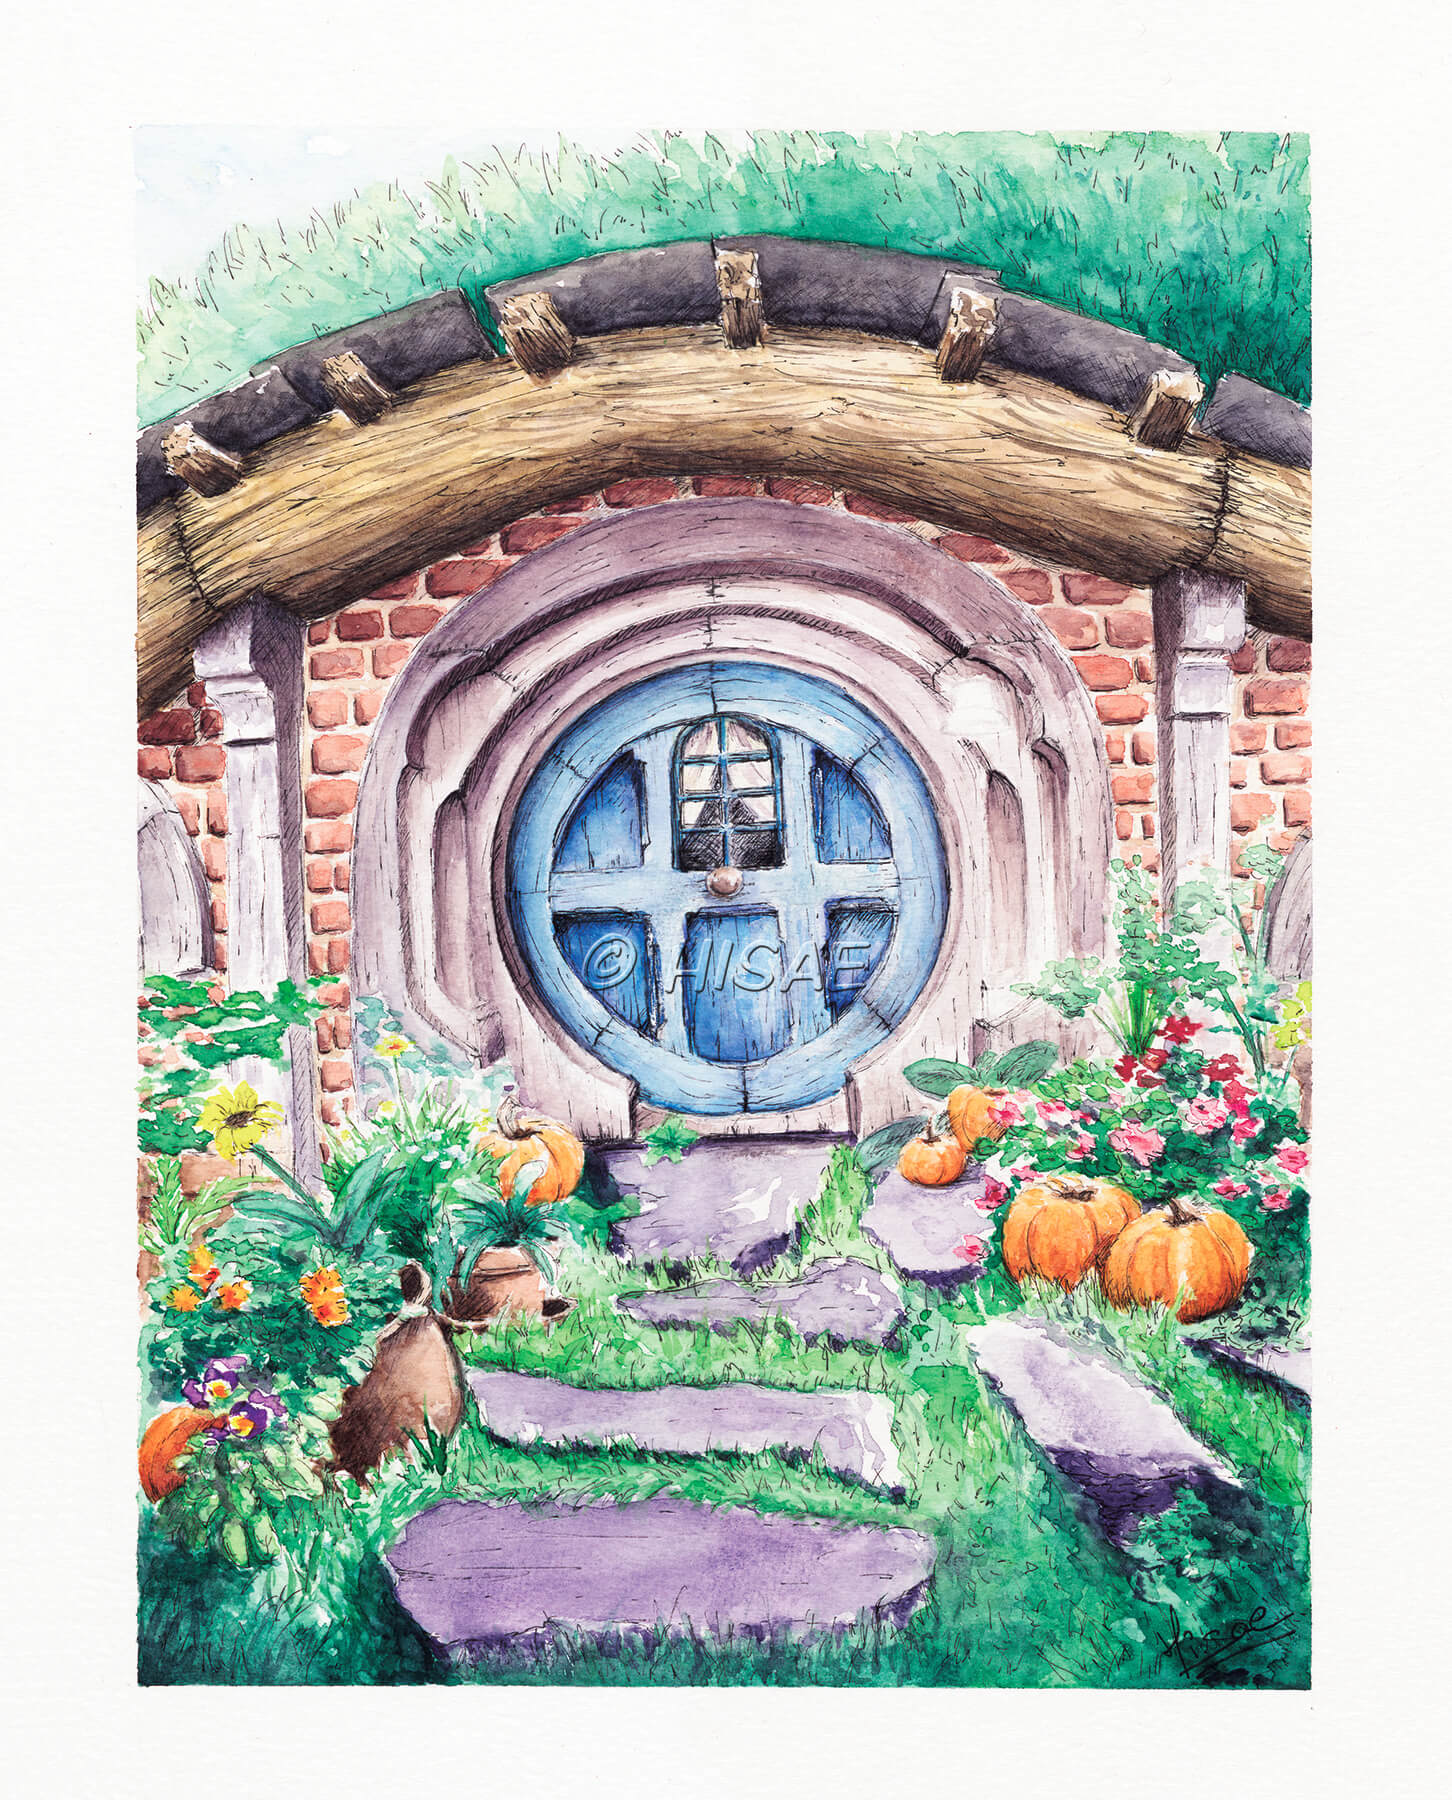 Impression laser d'une aquarelle d'une façade de maison de Hobbit de la Comté avec sa porte ronde ©Hisae illustrations